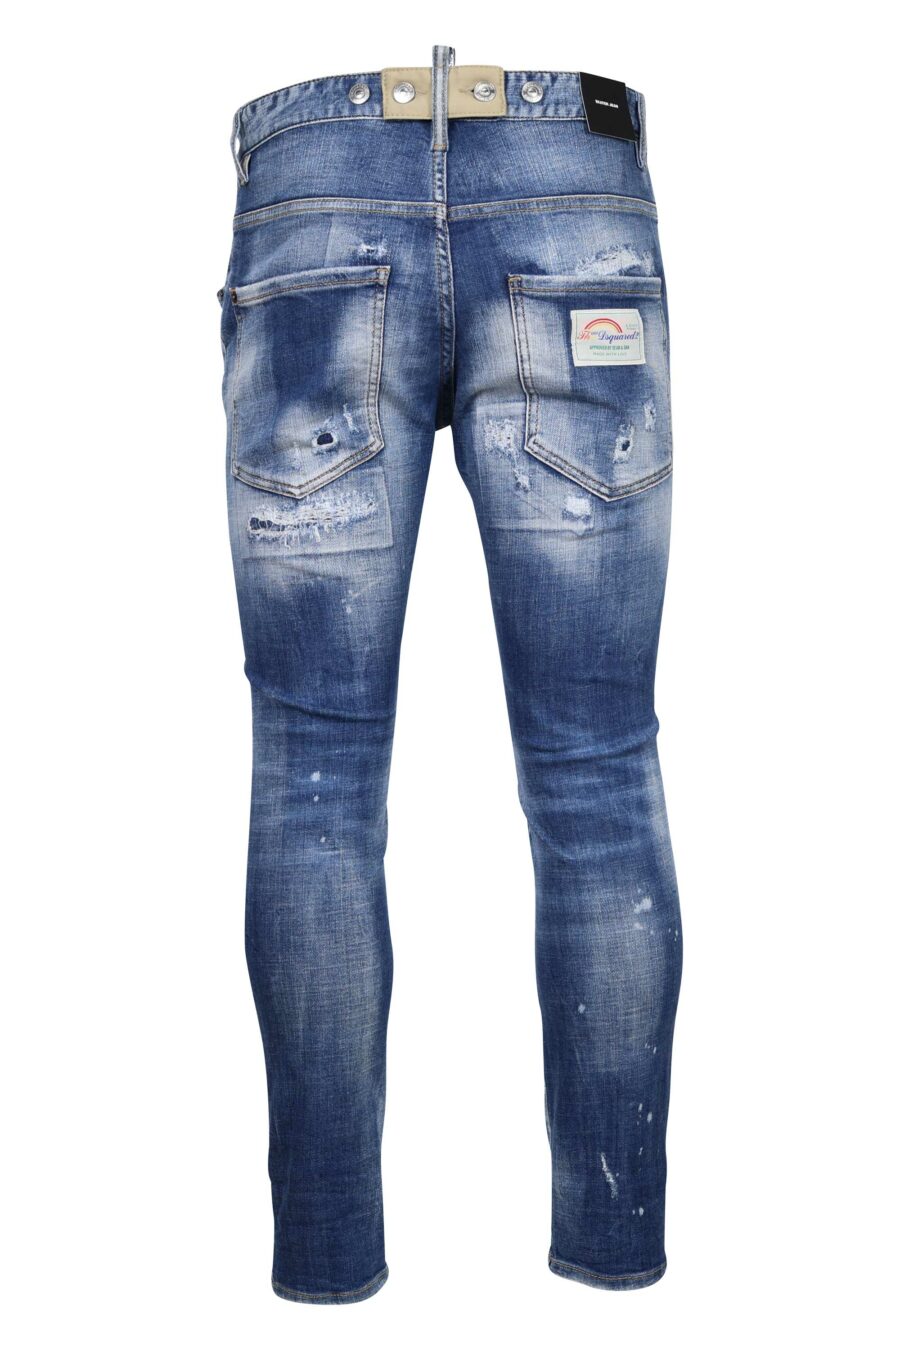 Dsquared2 - Pantalón vaquero azul claro skater jean con rotos y